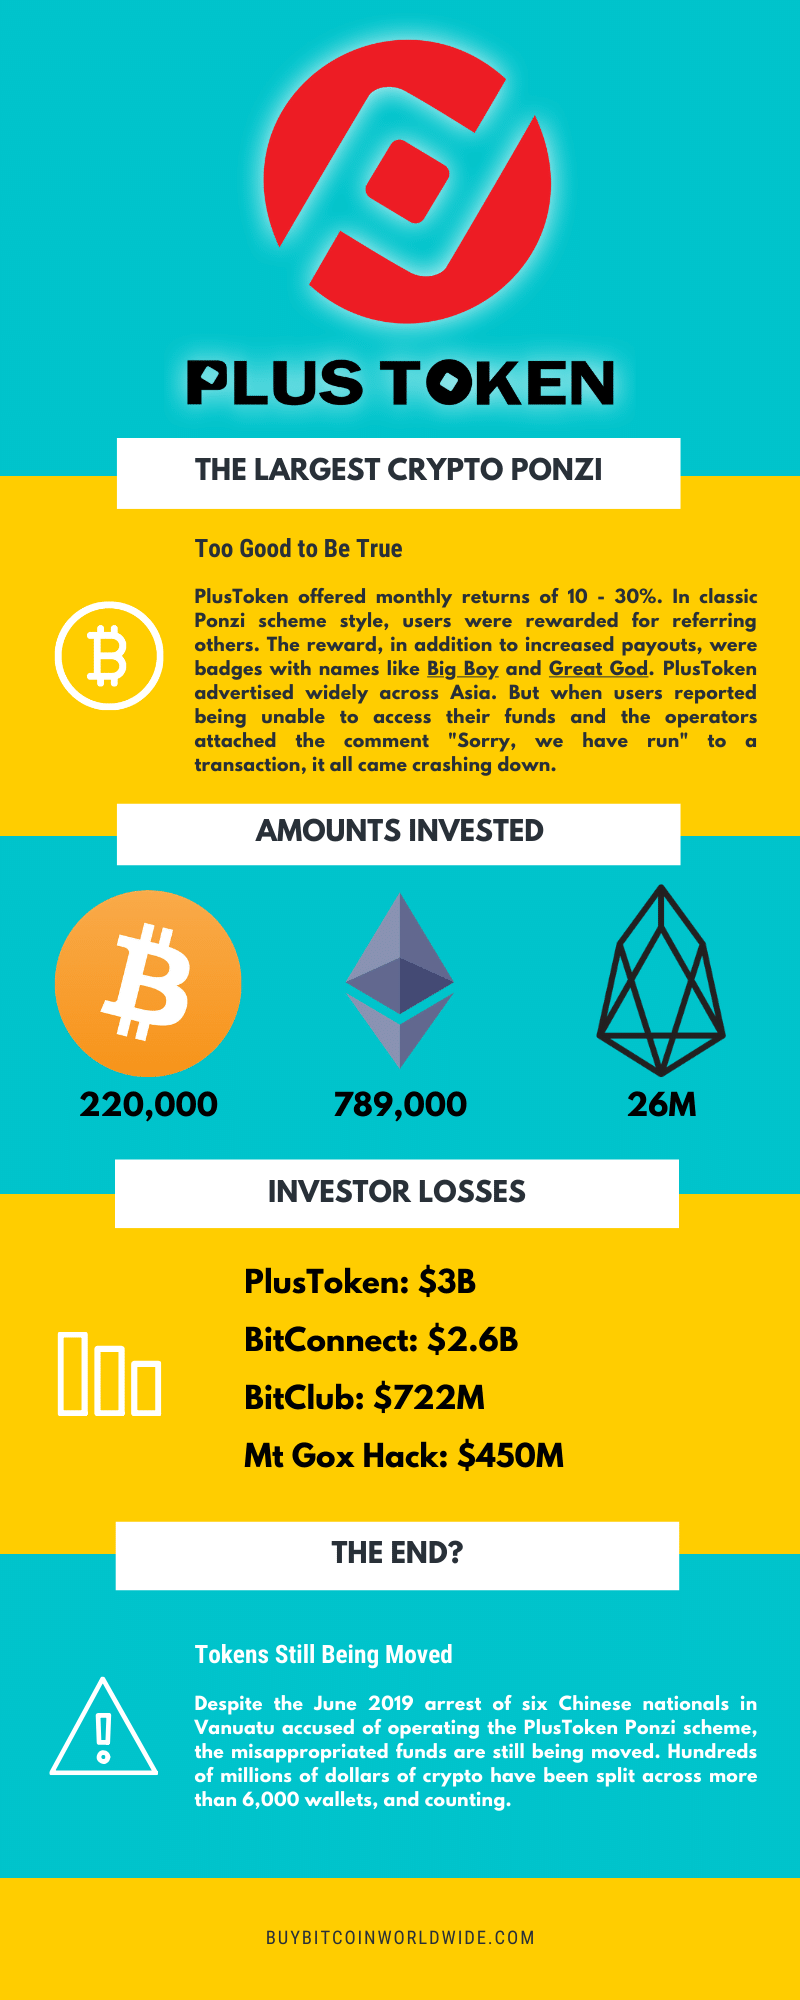 cumpărați bitcoin în china